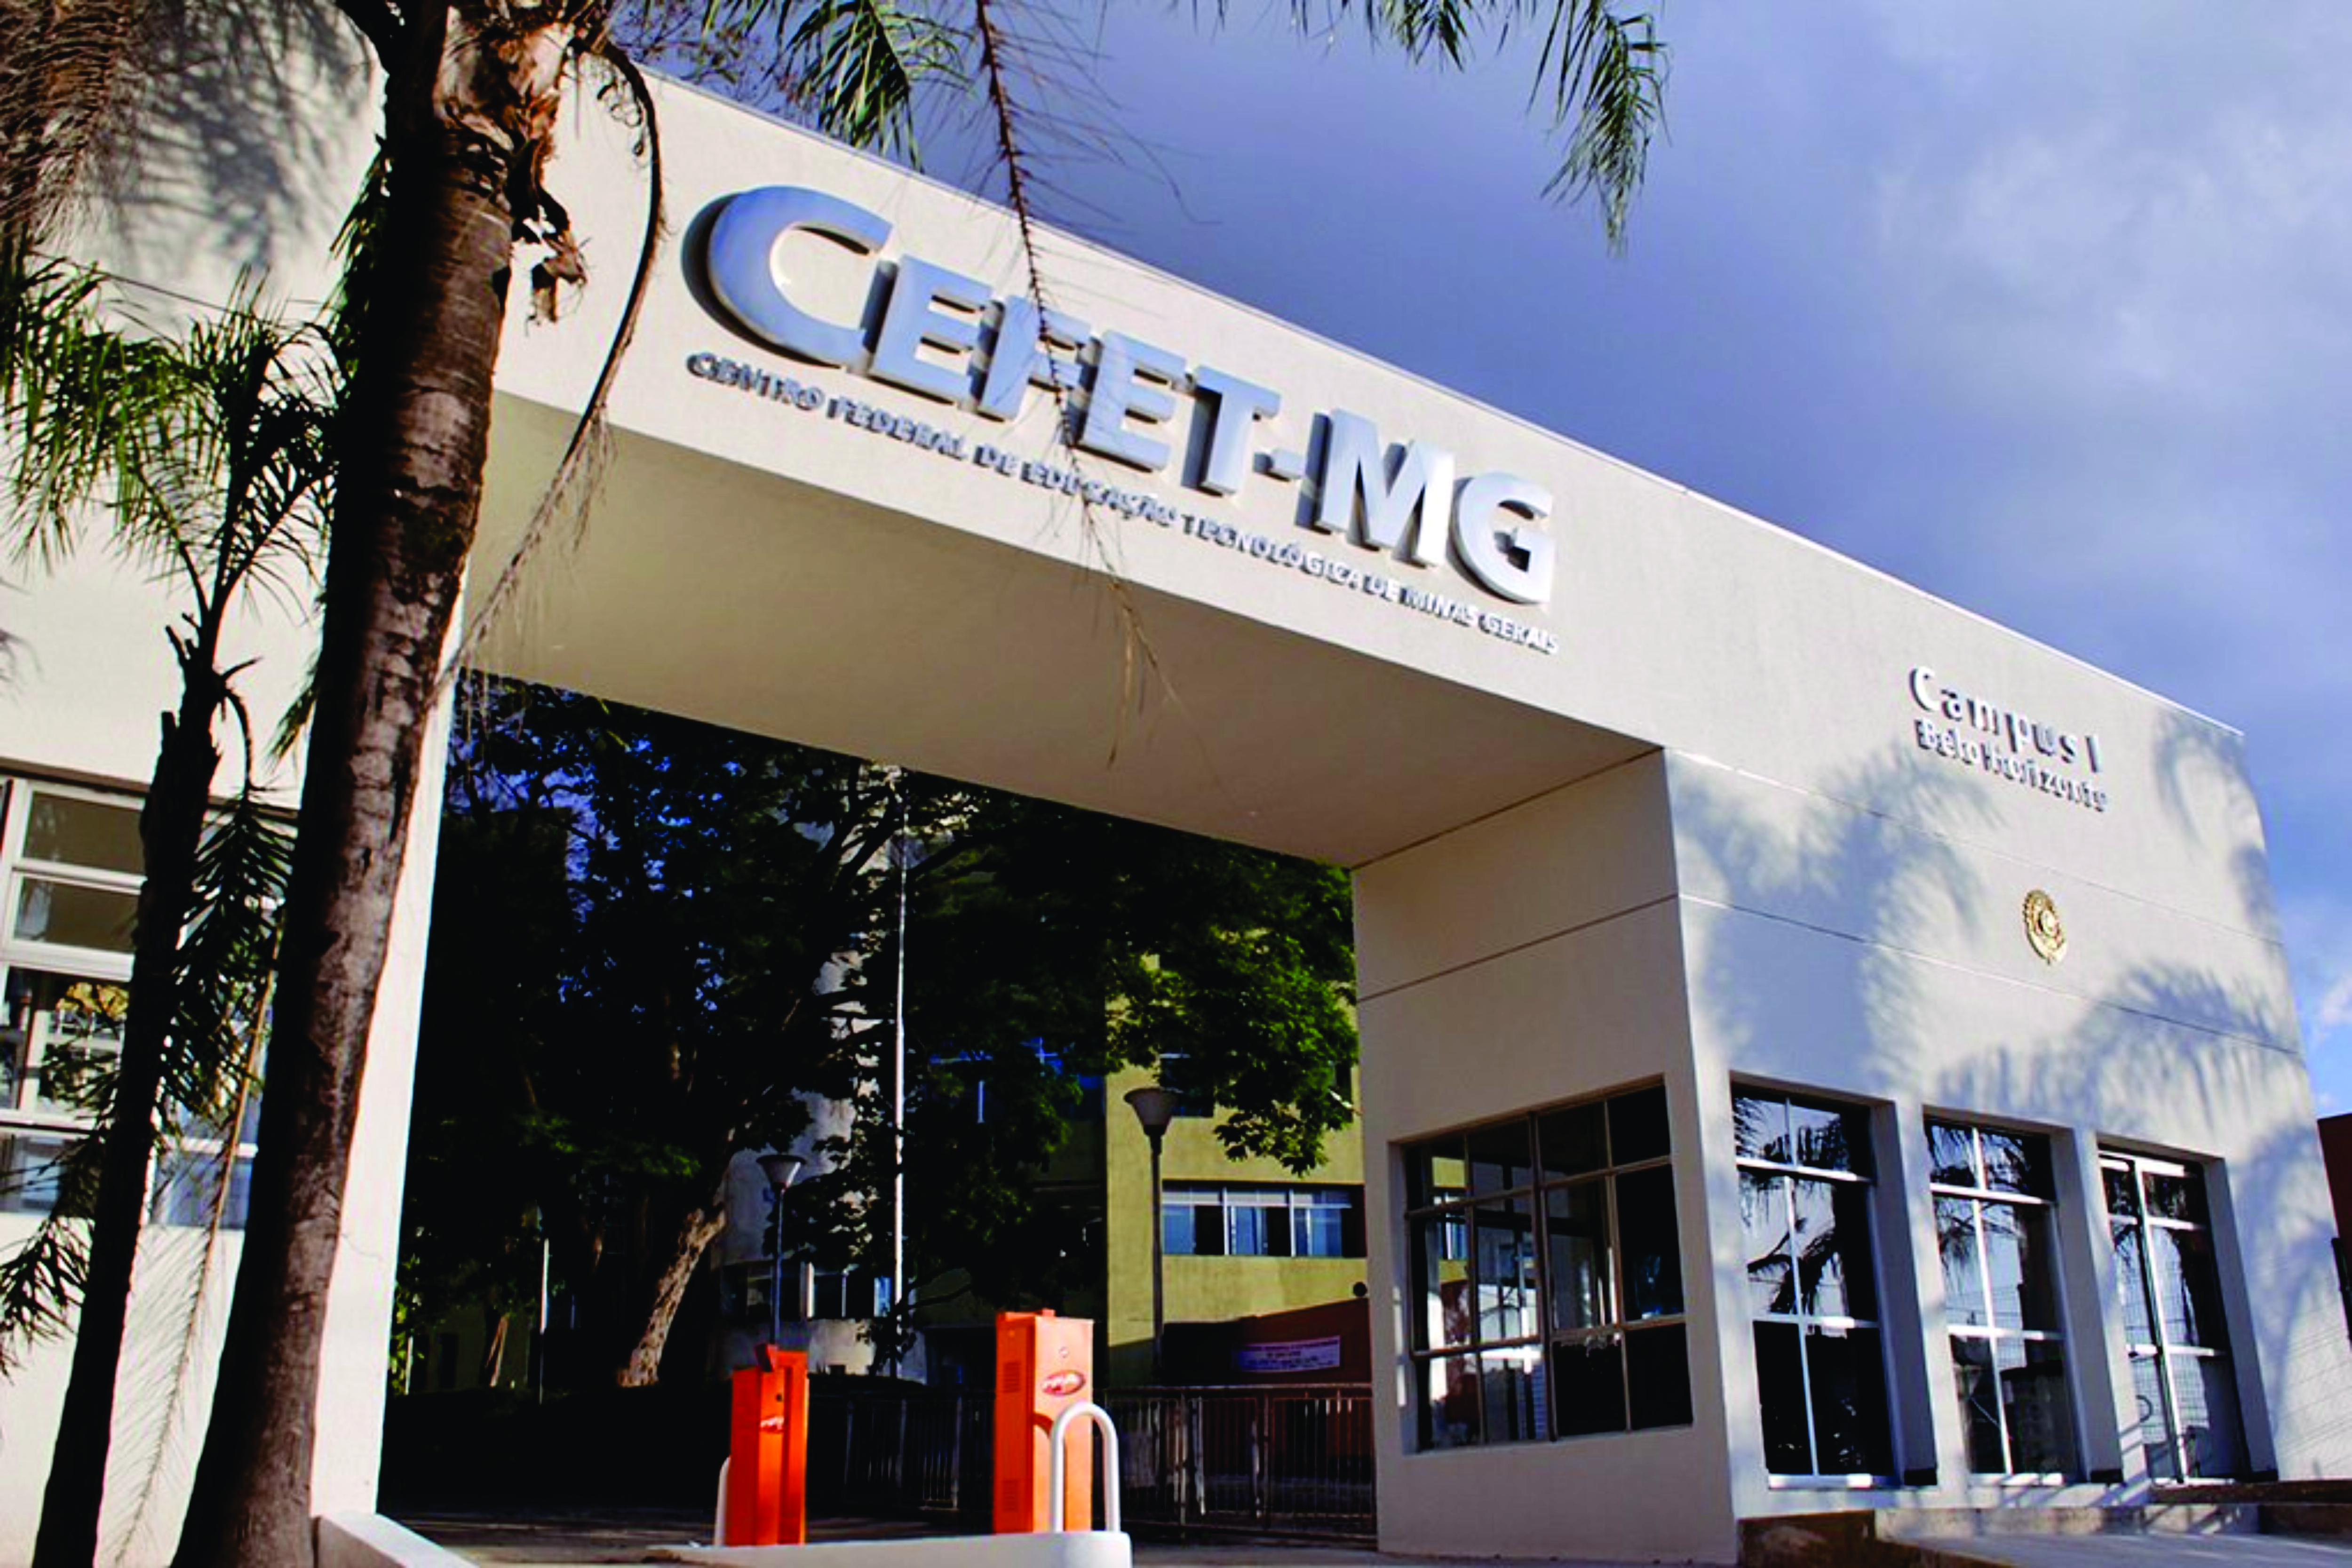 Centro Federal de Educação Tecnológica de Minas Gerais